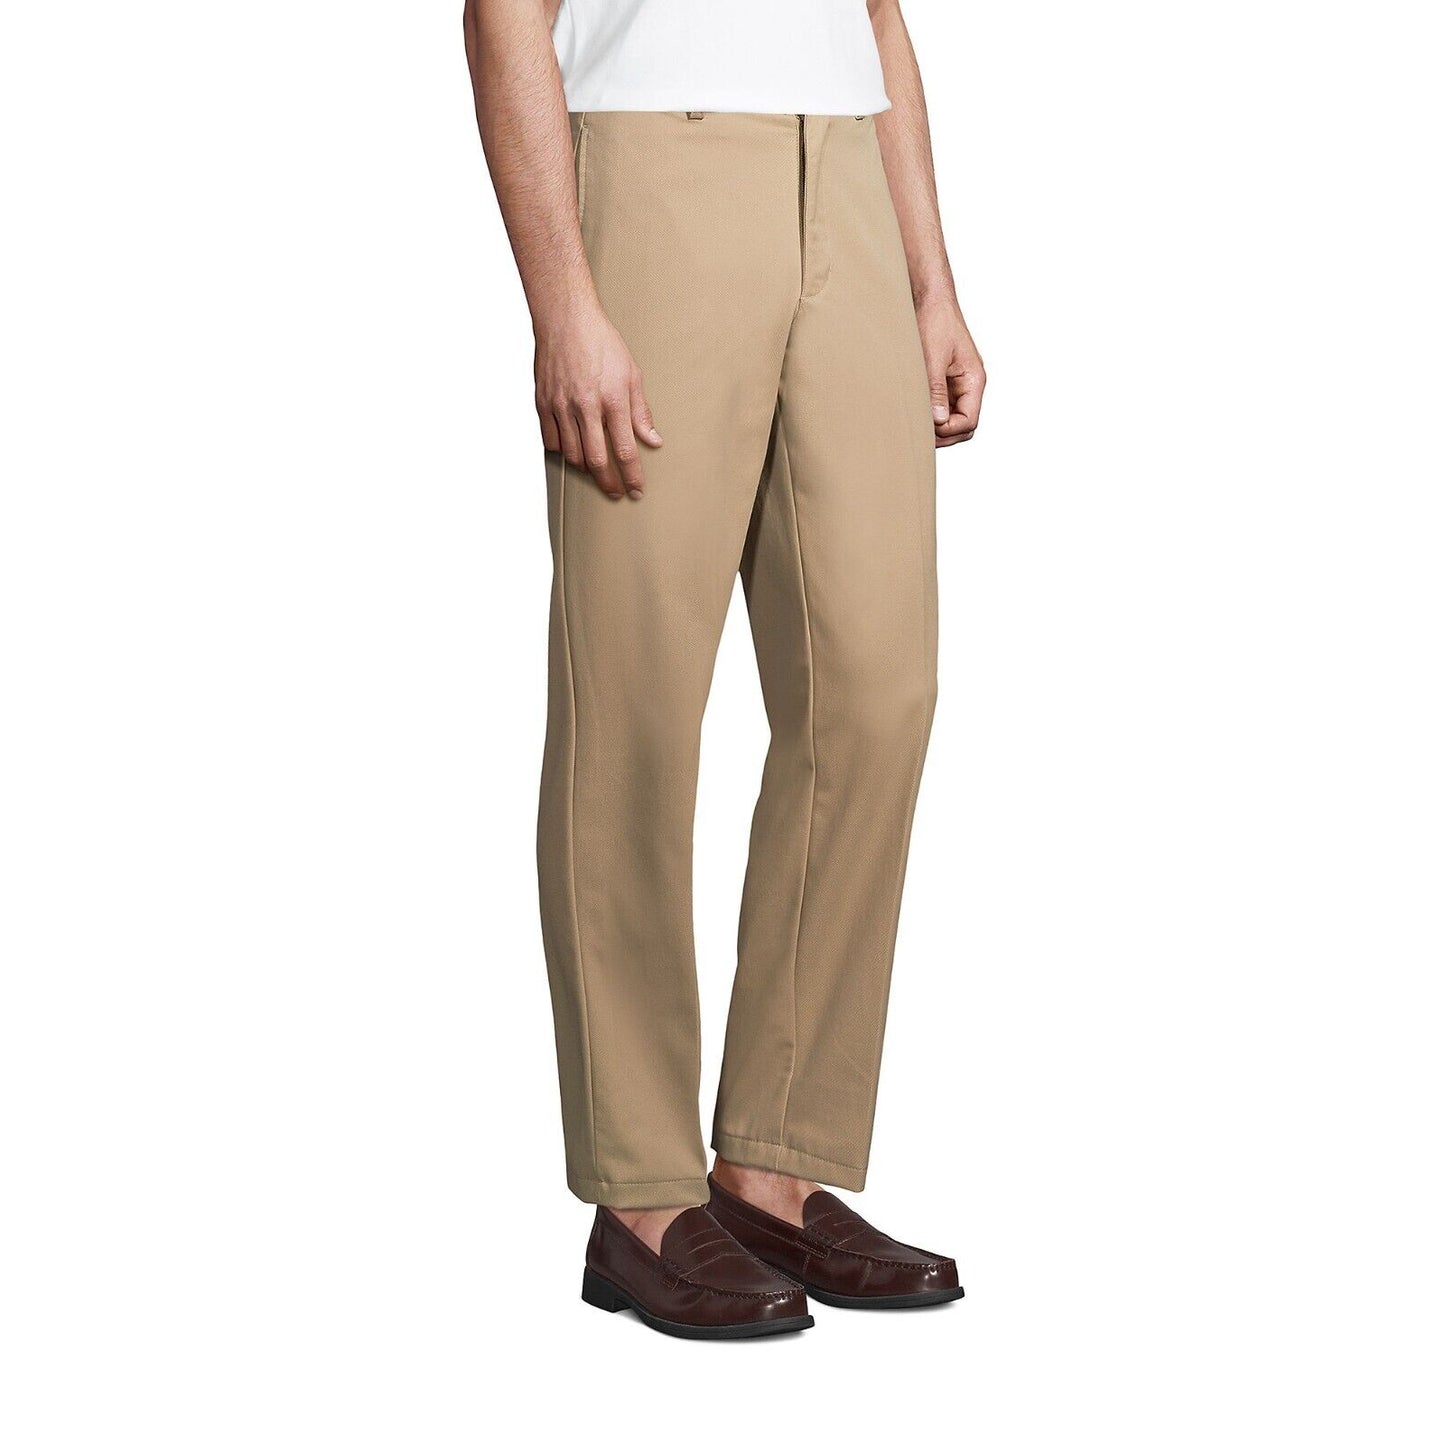 Men's Plain Front Chino Pants Size 32